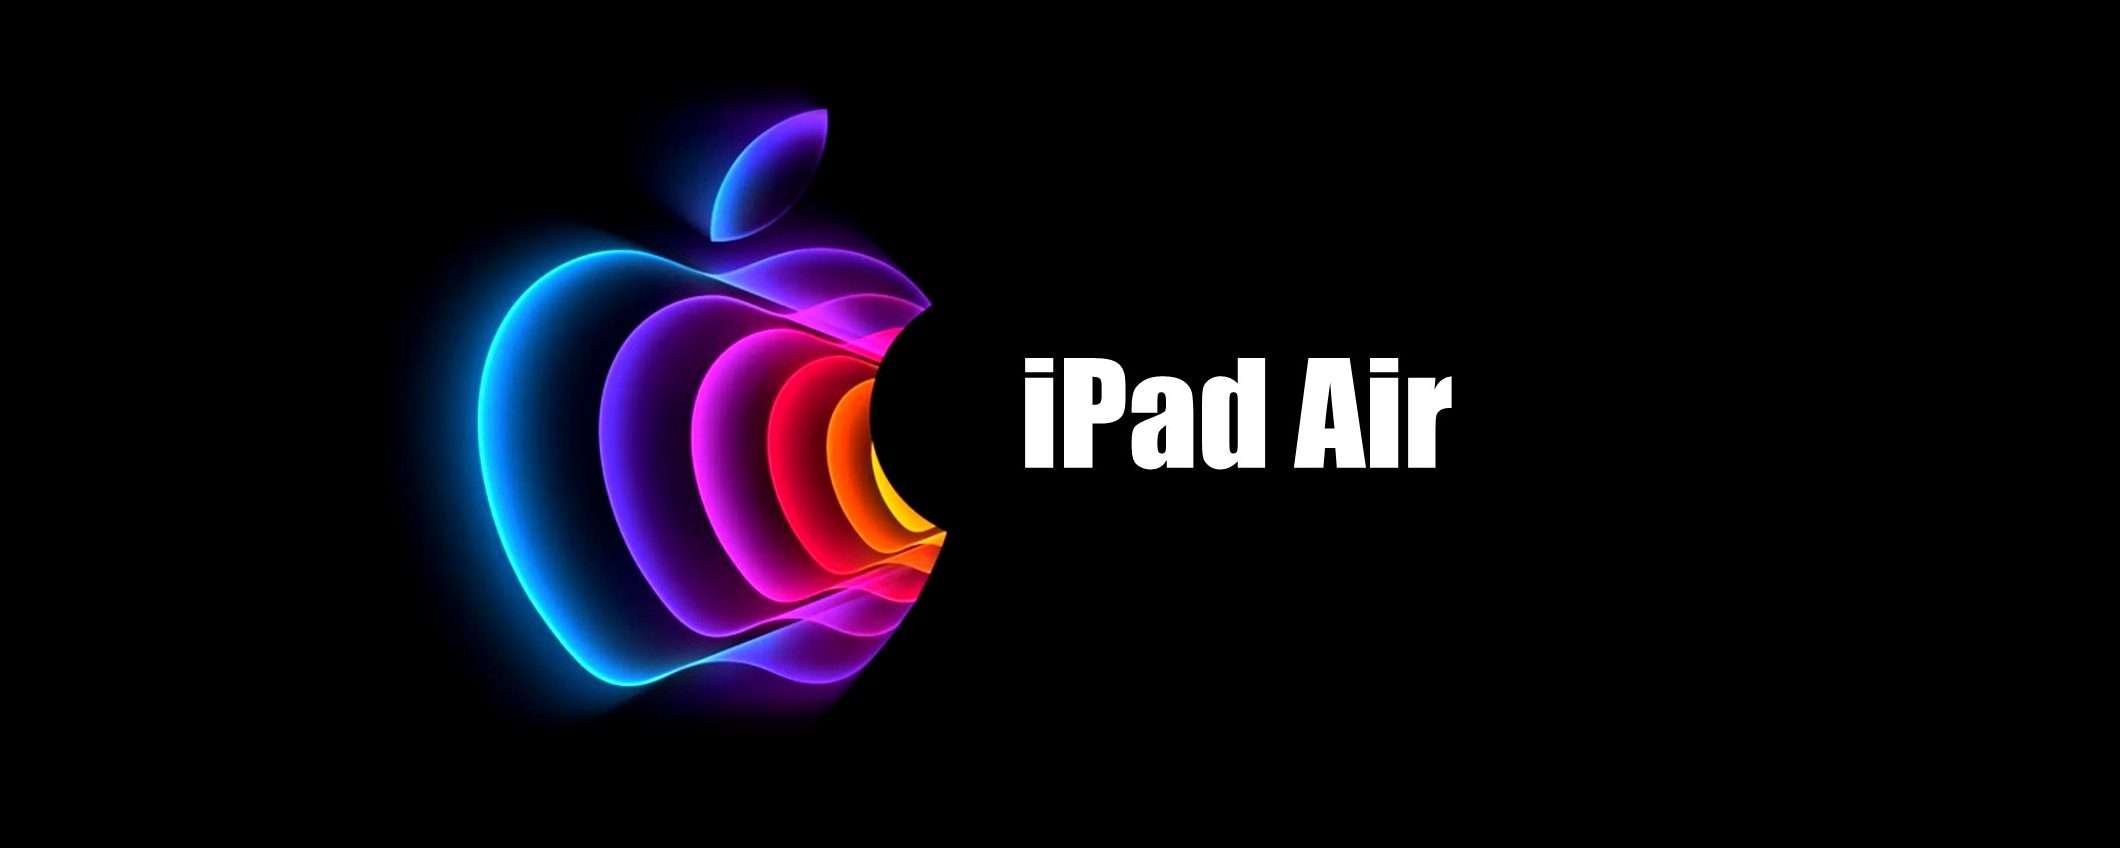 Apple annuncia un nuovo iPad Air con chip M1